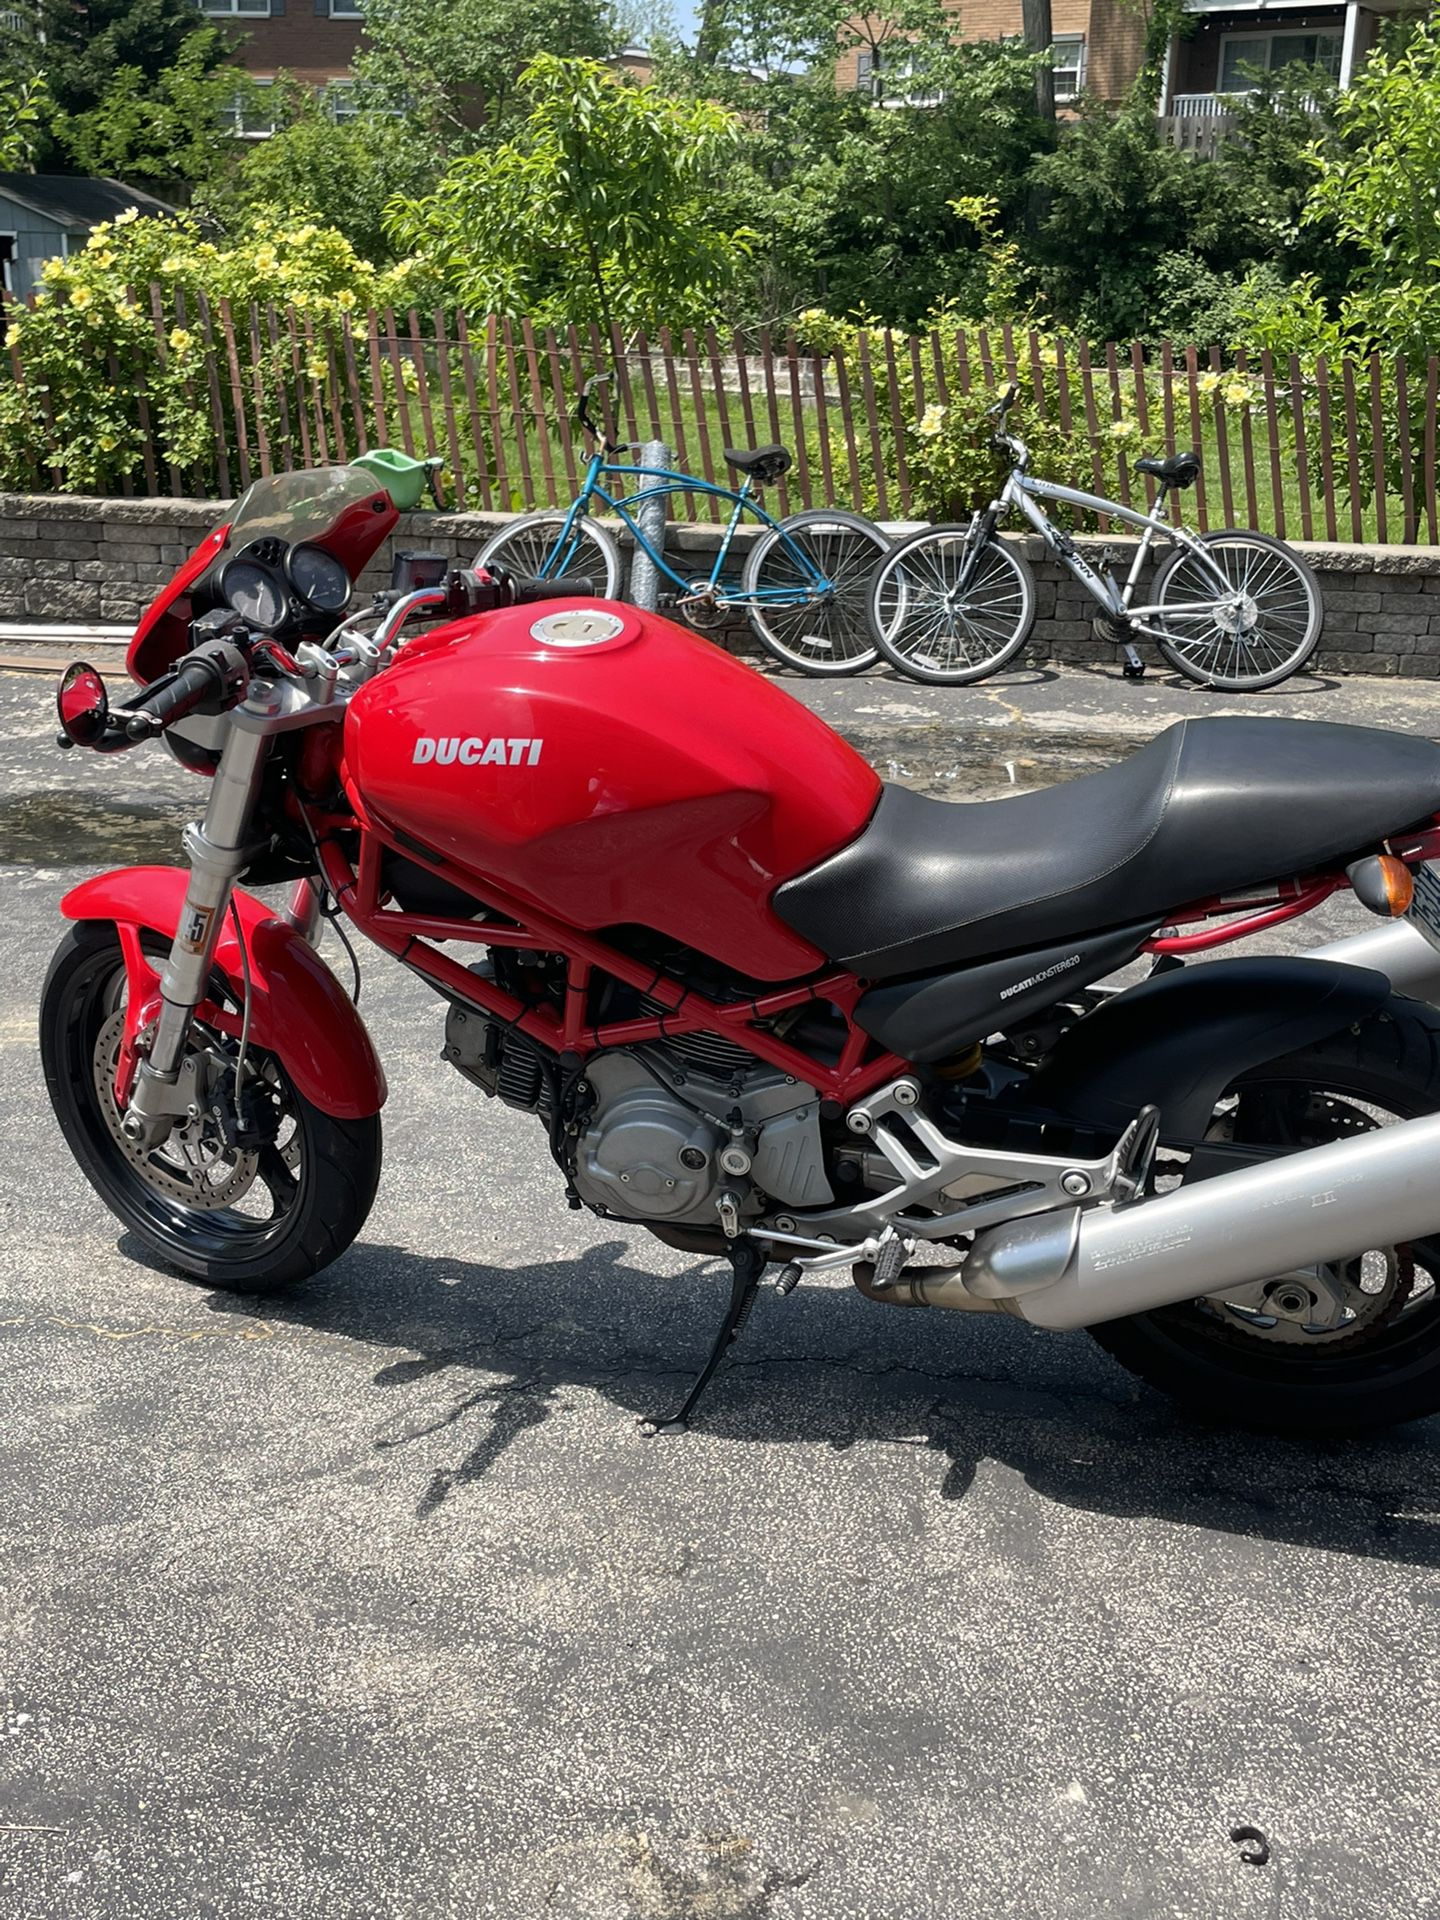 Ducati Monster 620 red